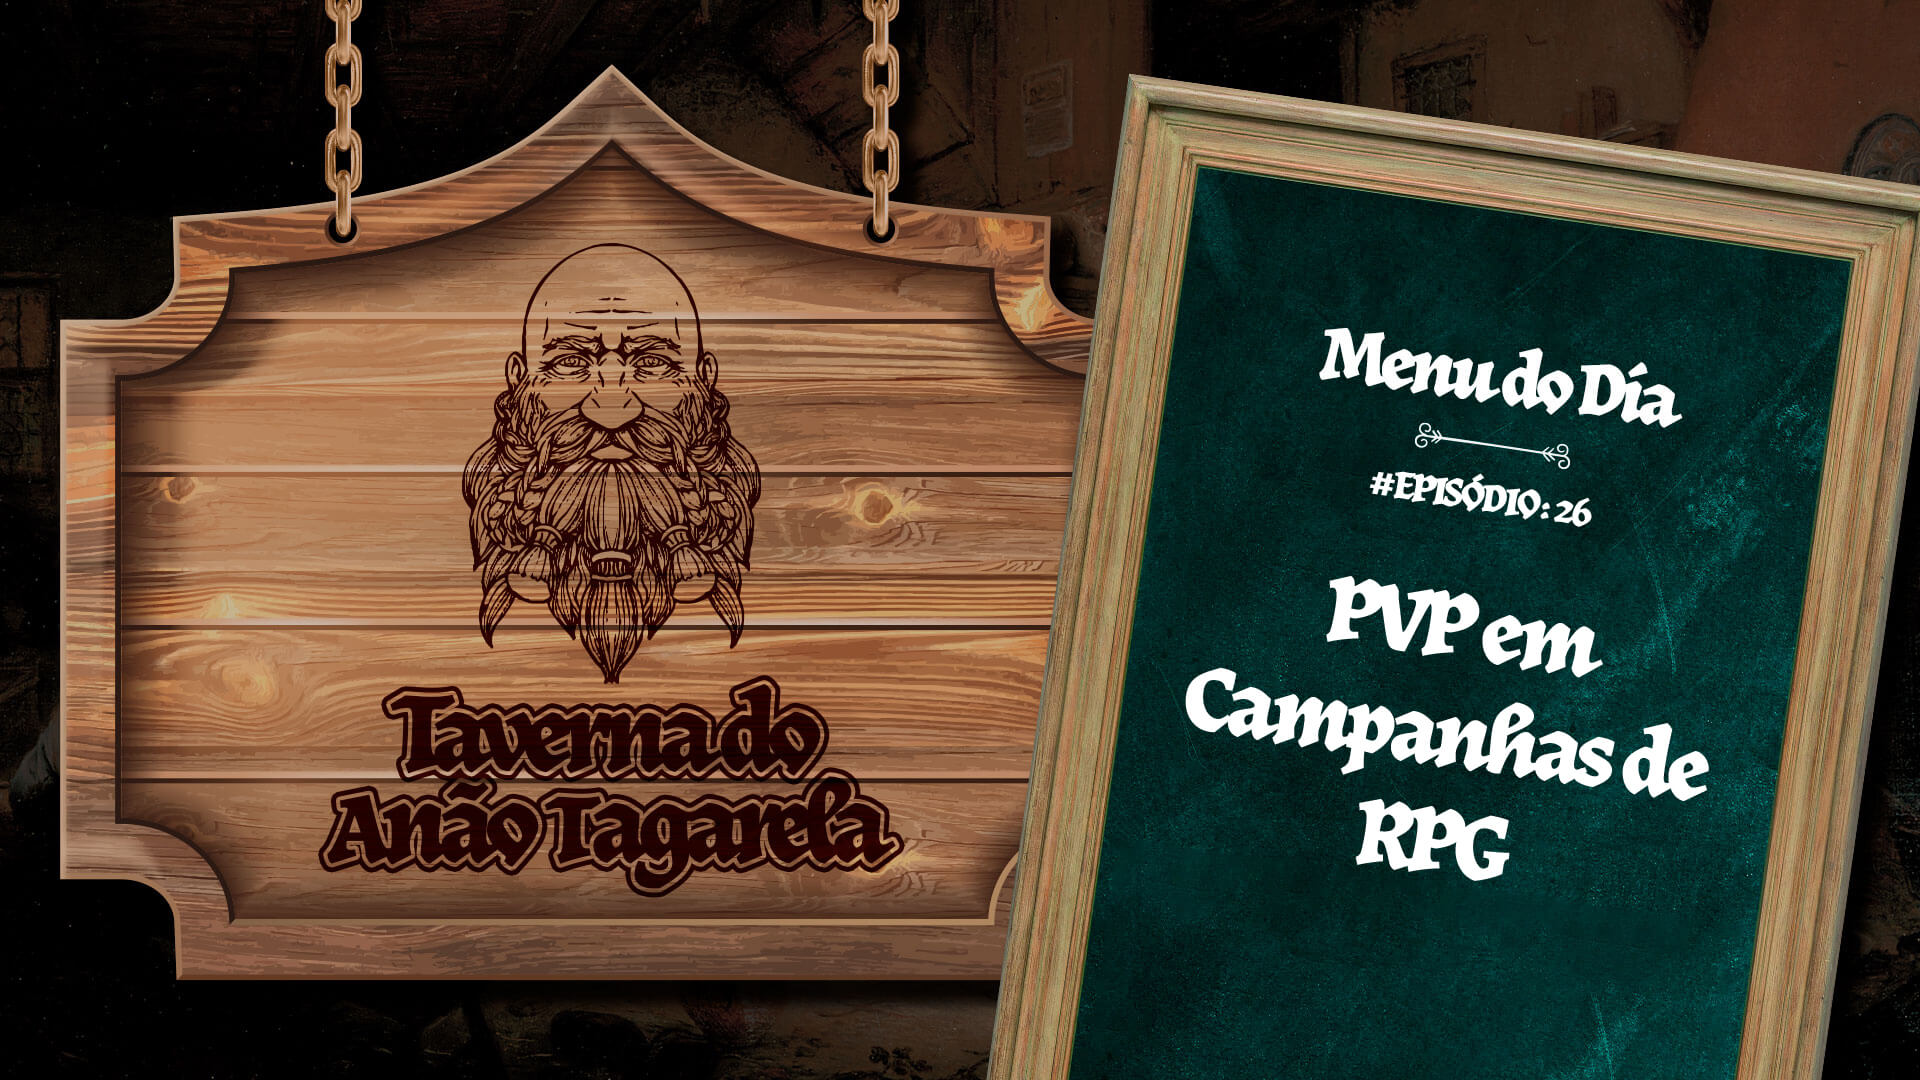 PVP em Campanhas de RPG - Taverna do Anão Tagarela #26